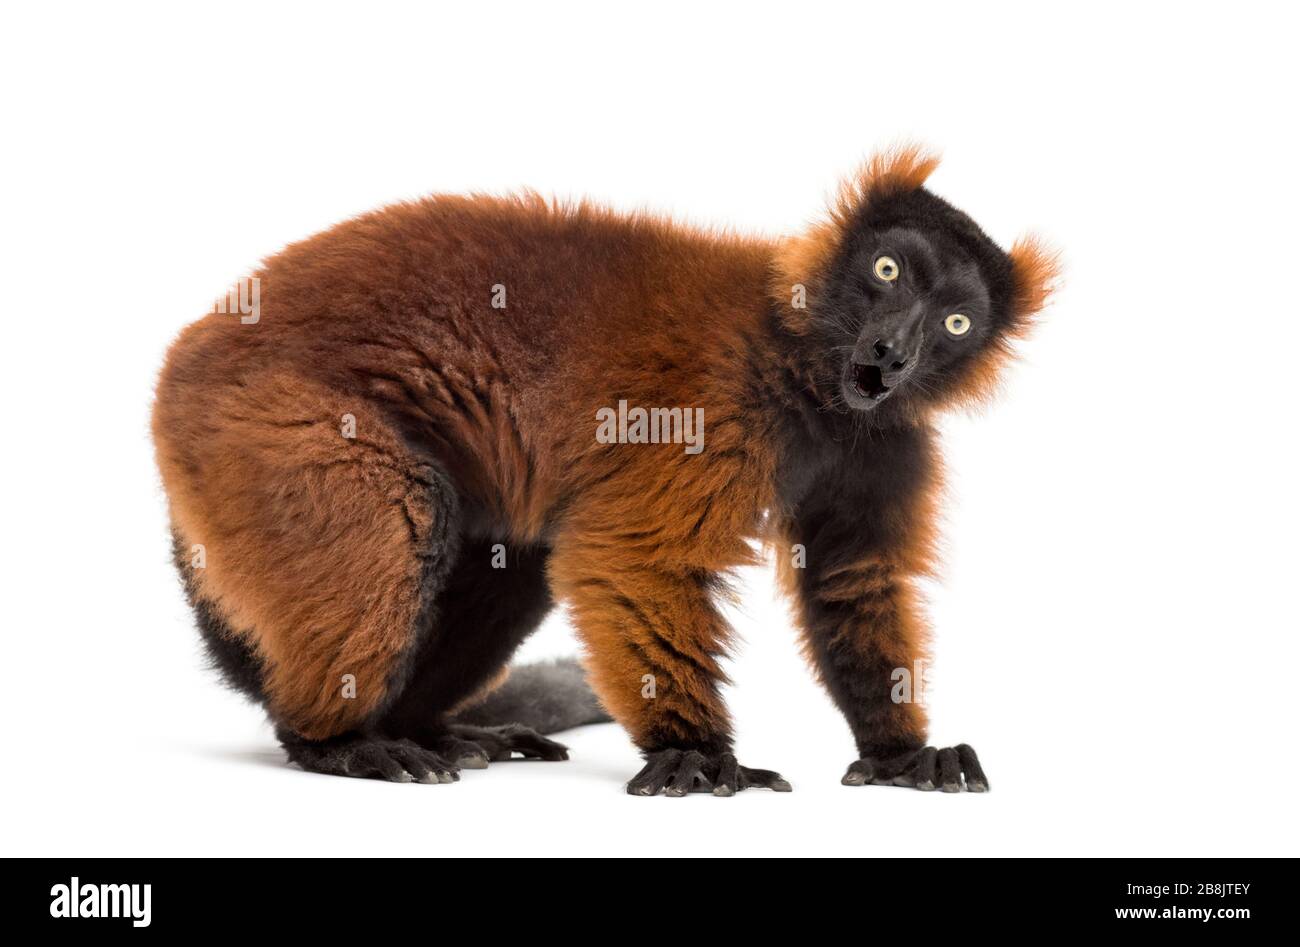 Un lemur rouge ruffé surprise devant un fond blanc Banque D'Images